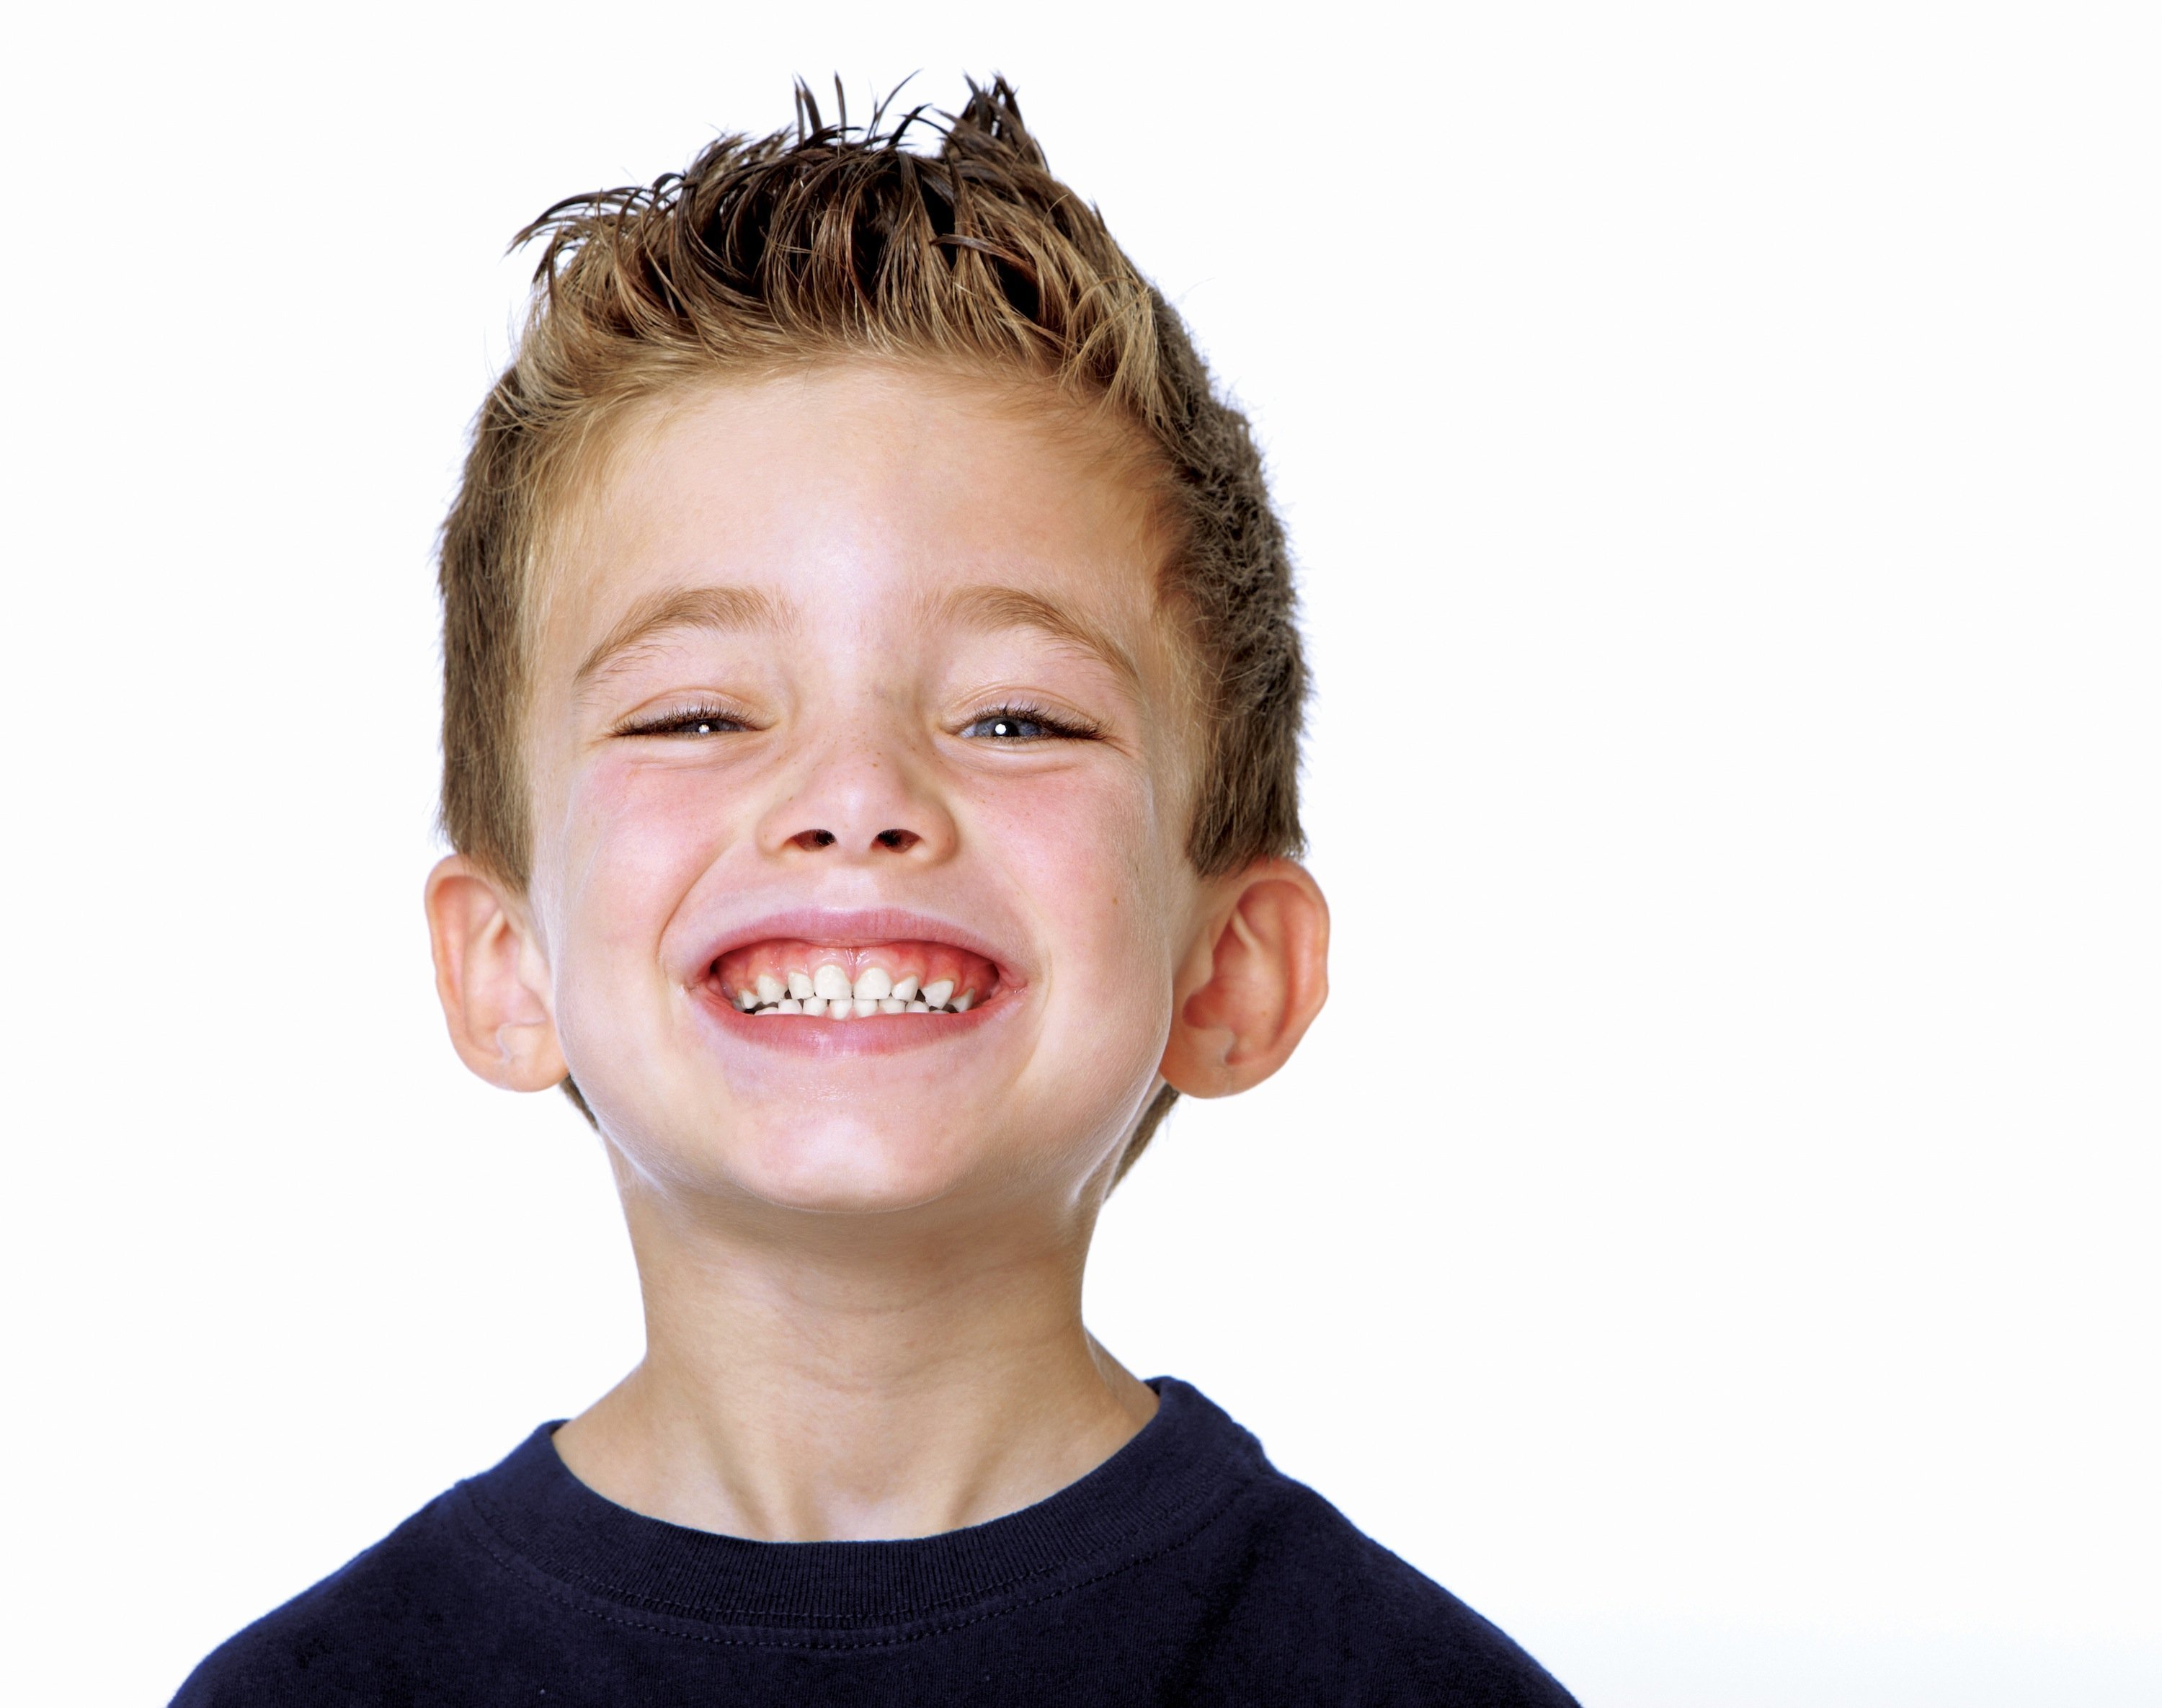 ortodoncia para niños prevenir y corregir